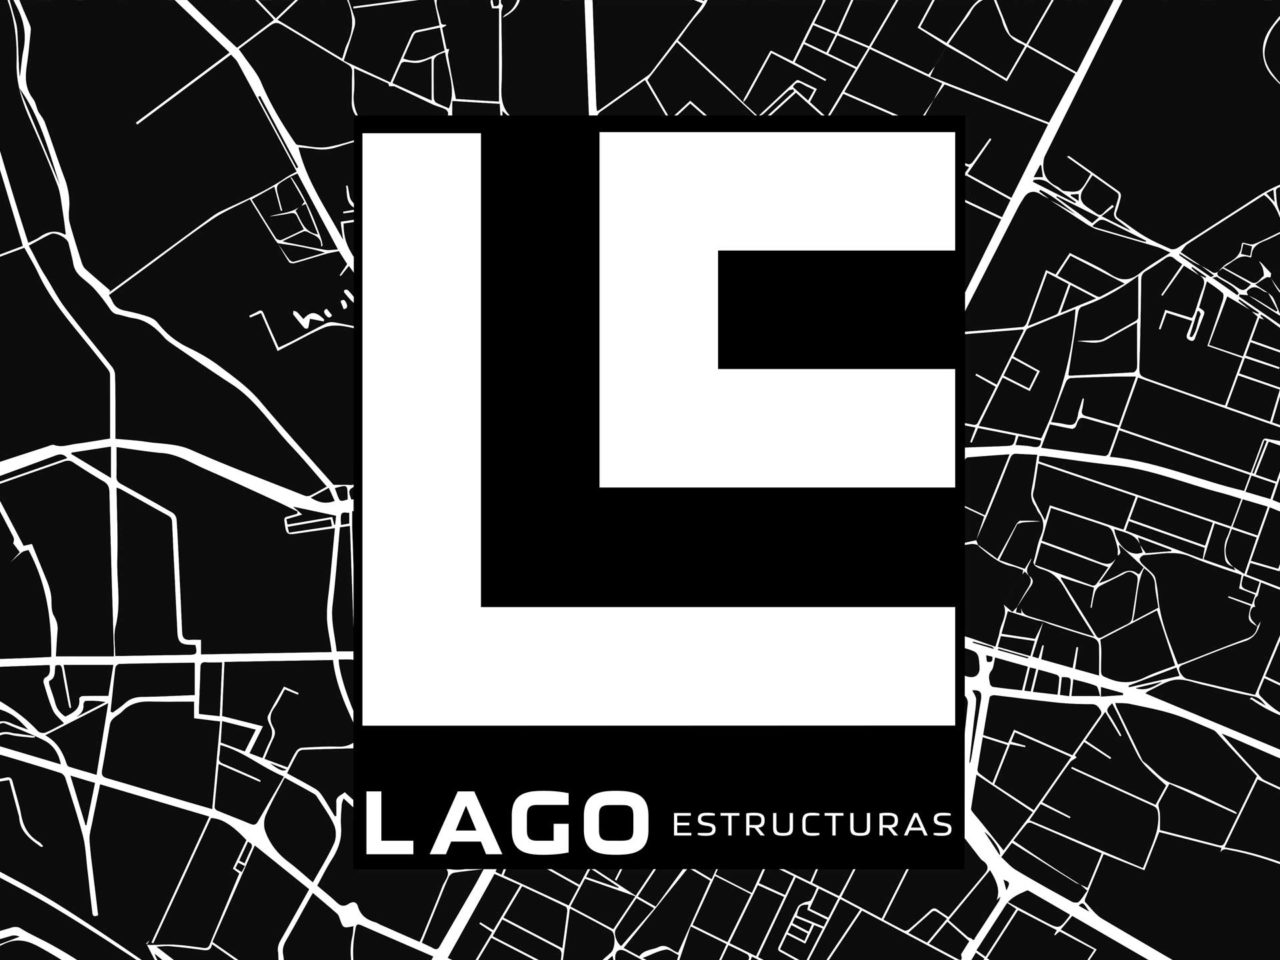 EstructurasLago-ubicacionDestacada-1280x960.jpg